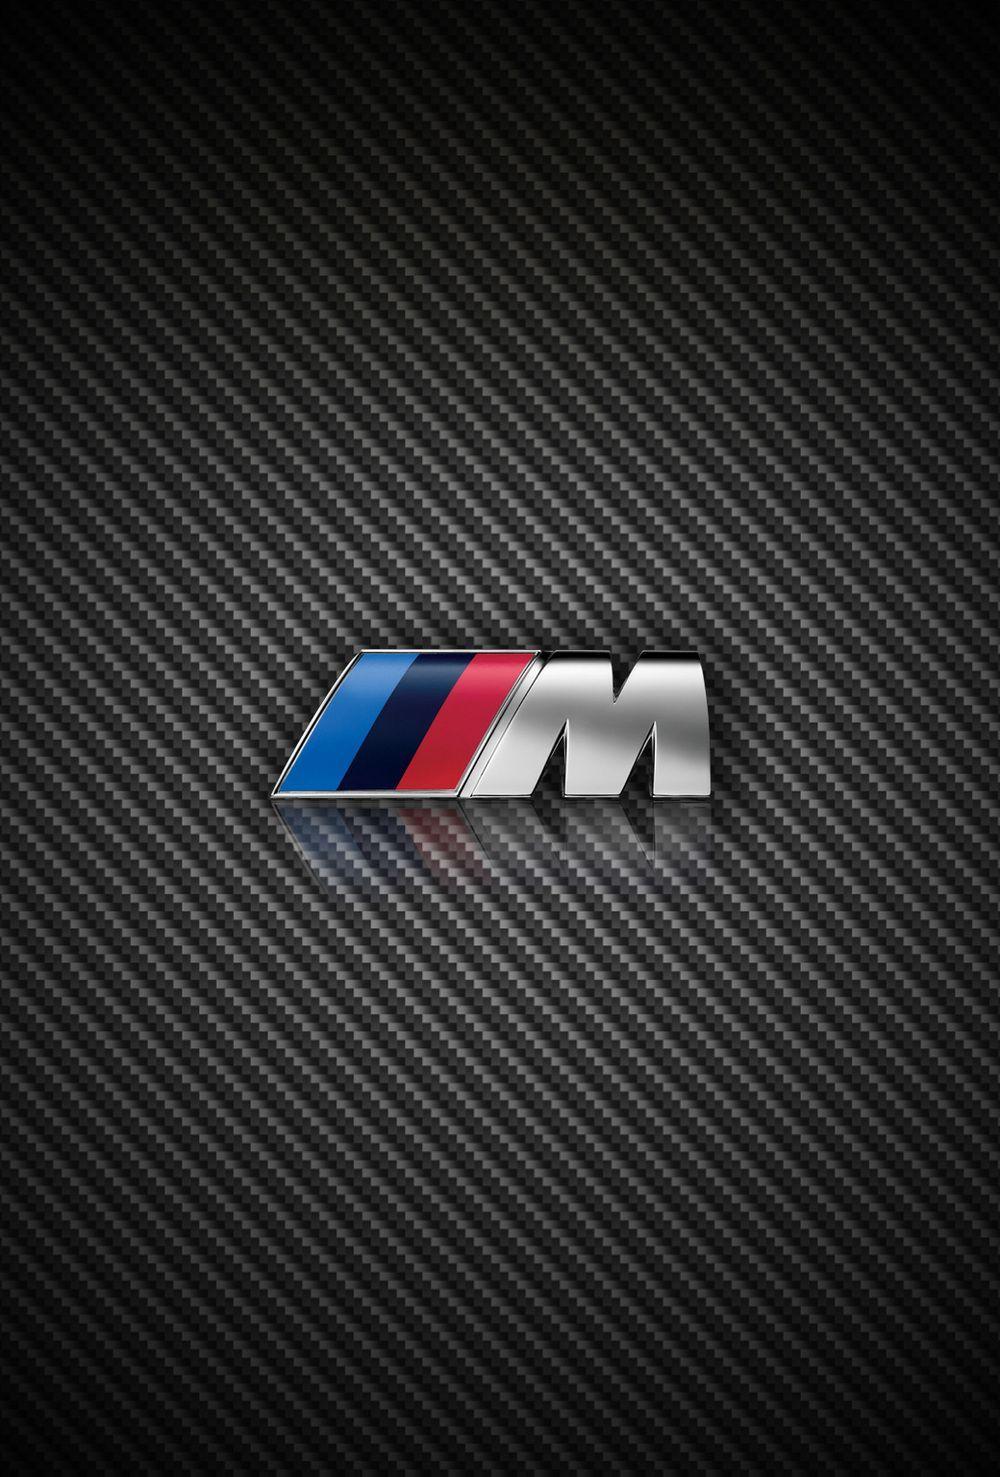 Logos For > Bmw M Logo Wallpaper iPhone